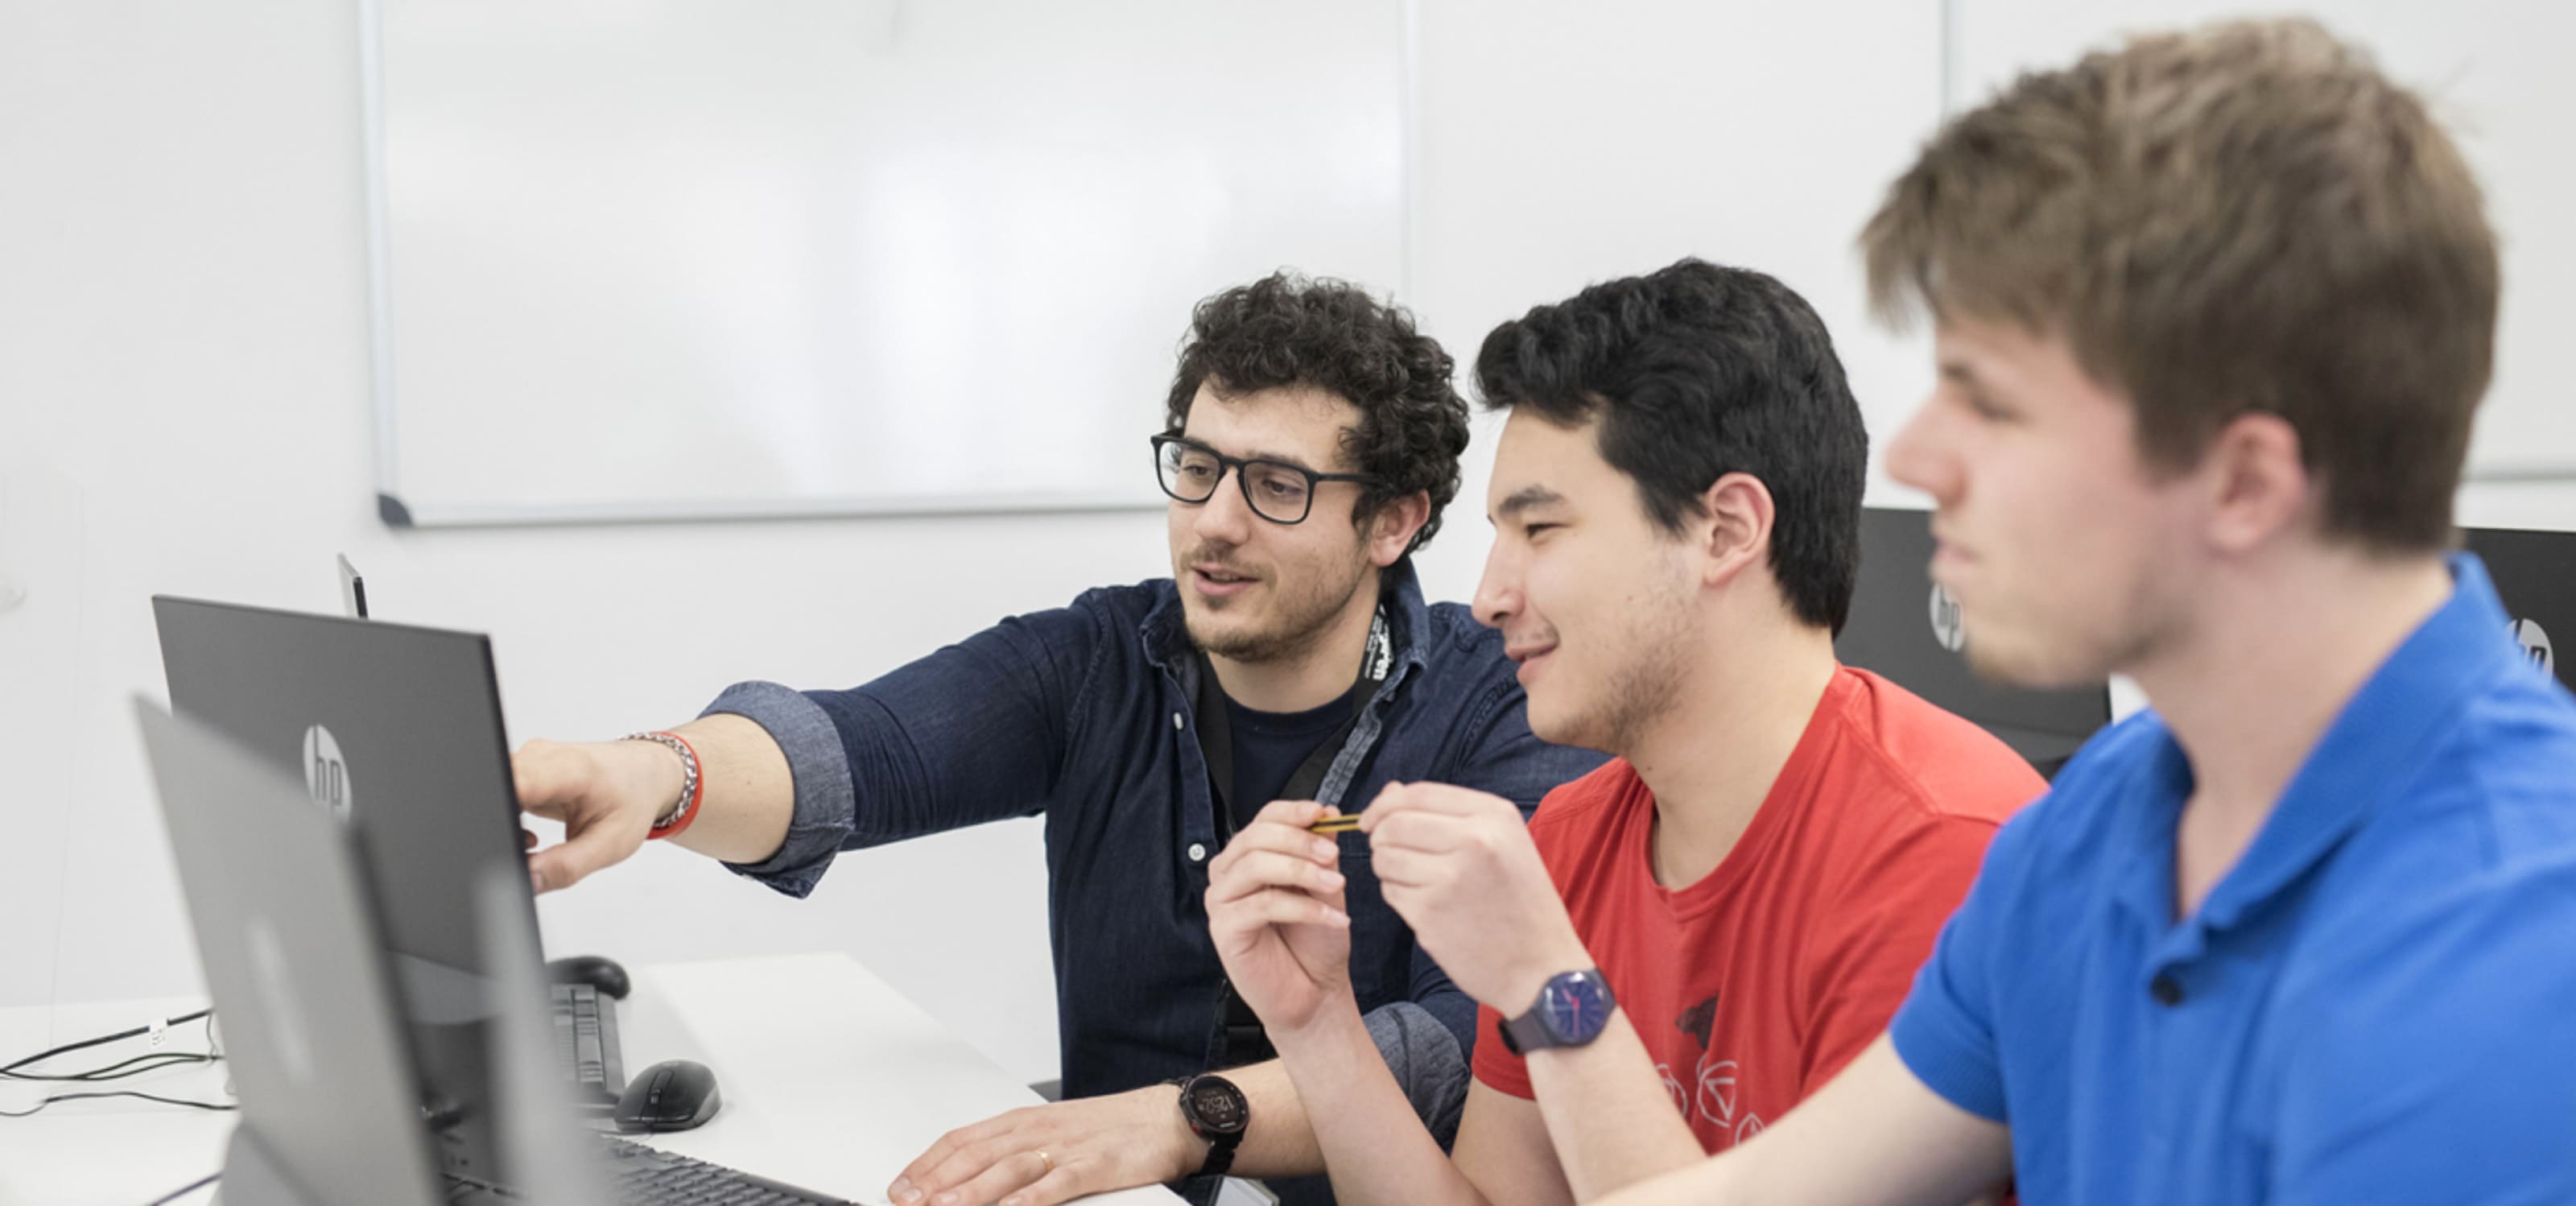 Un profesor de DigiPen Europe-Bilbao comparte conocimiento con dos estudiantes mientras trabajan con sus portátiles.